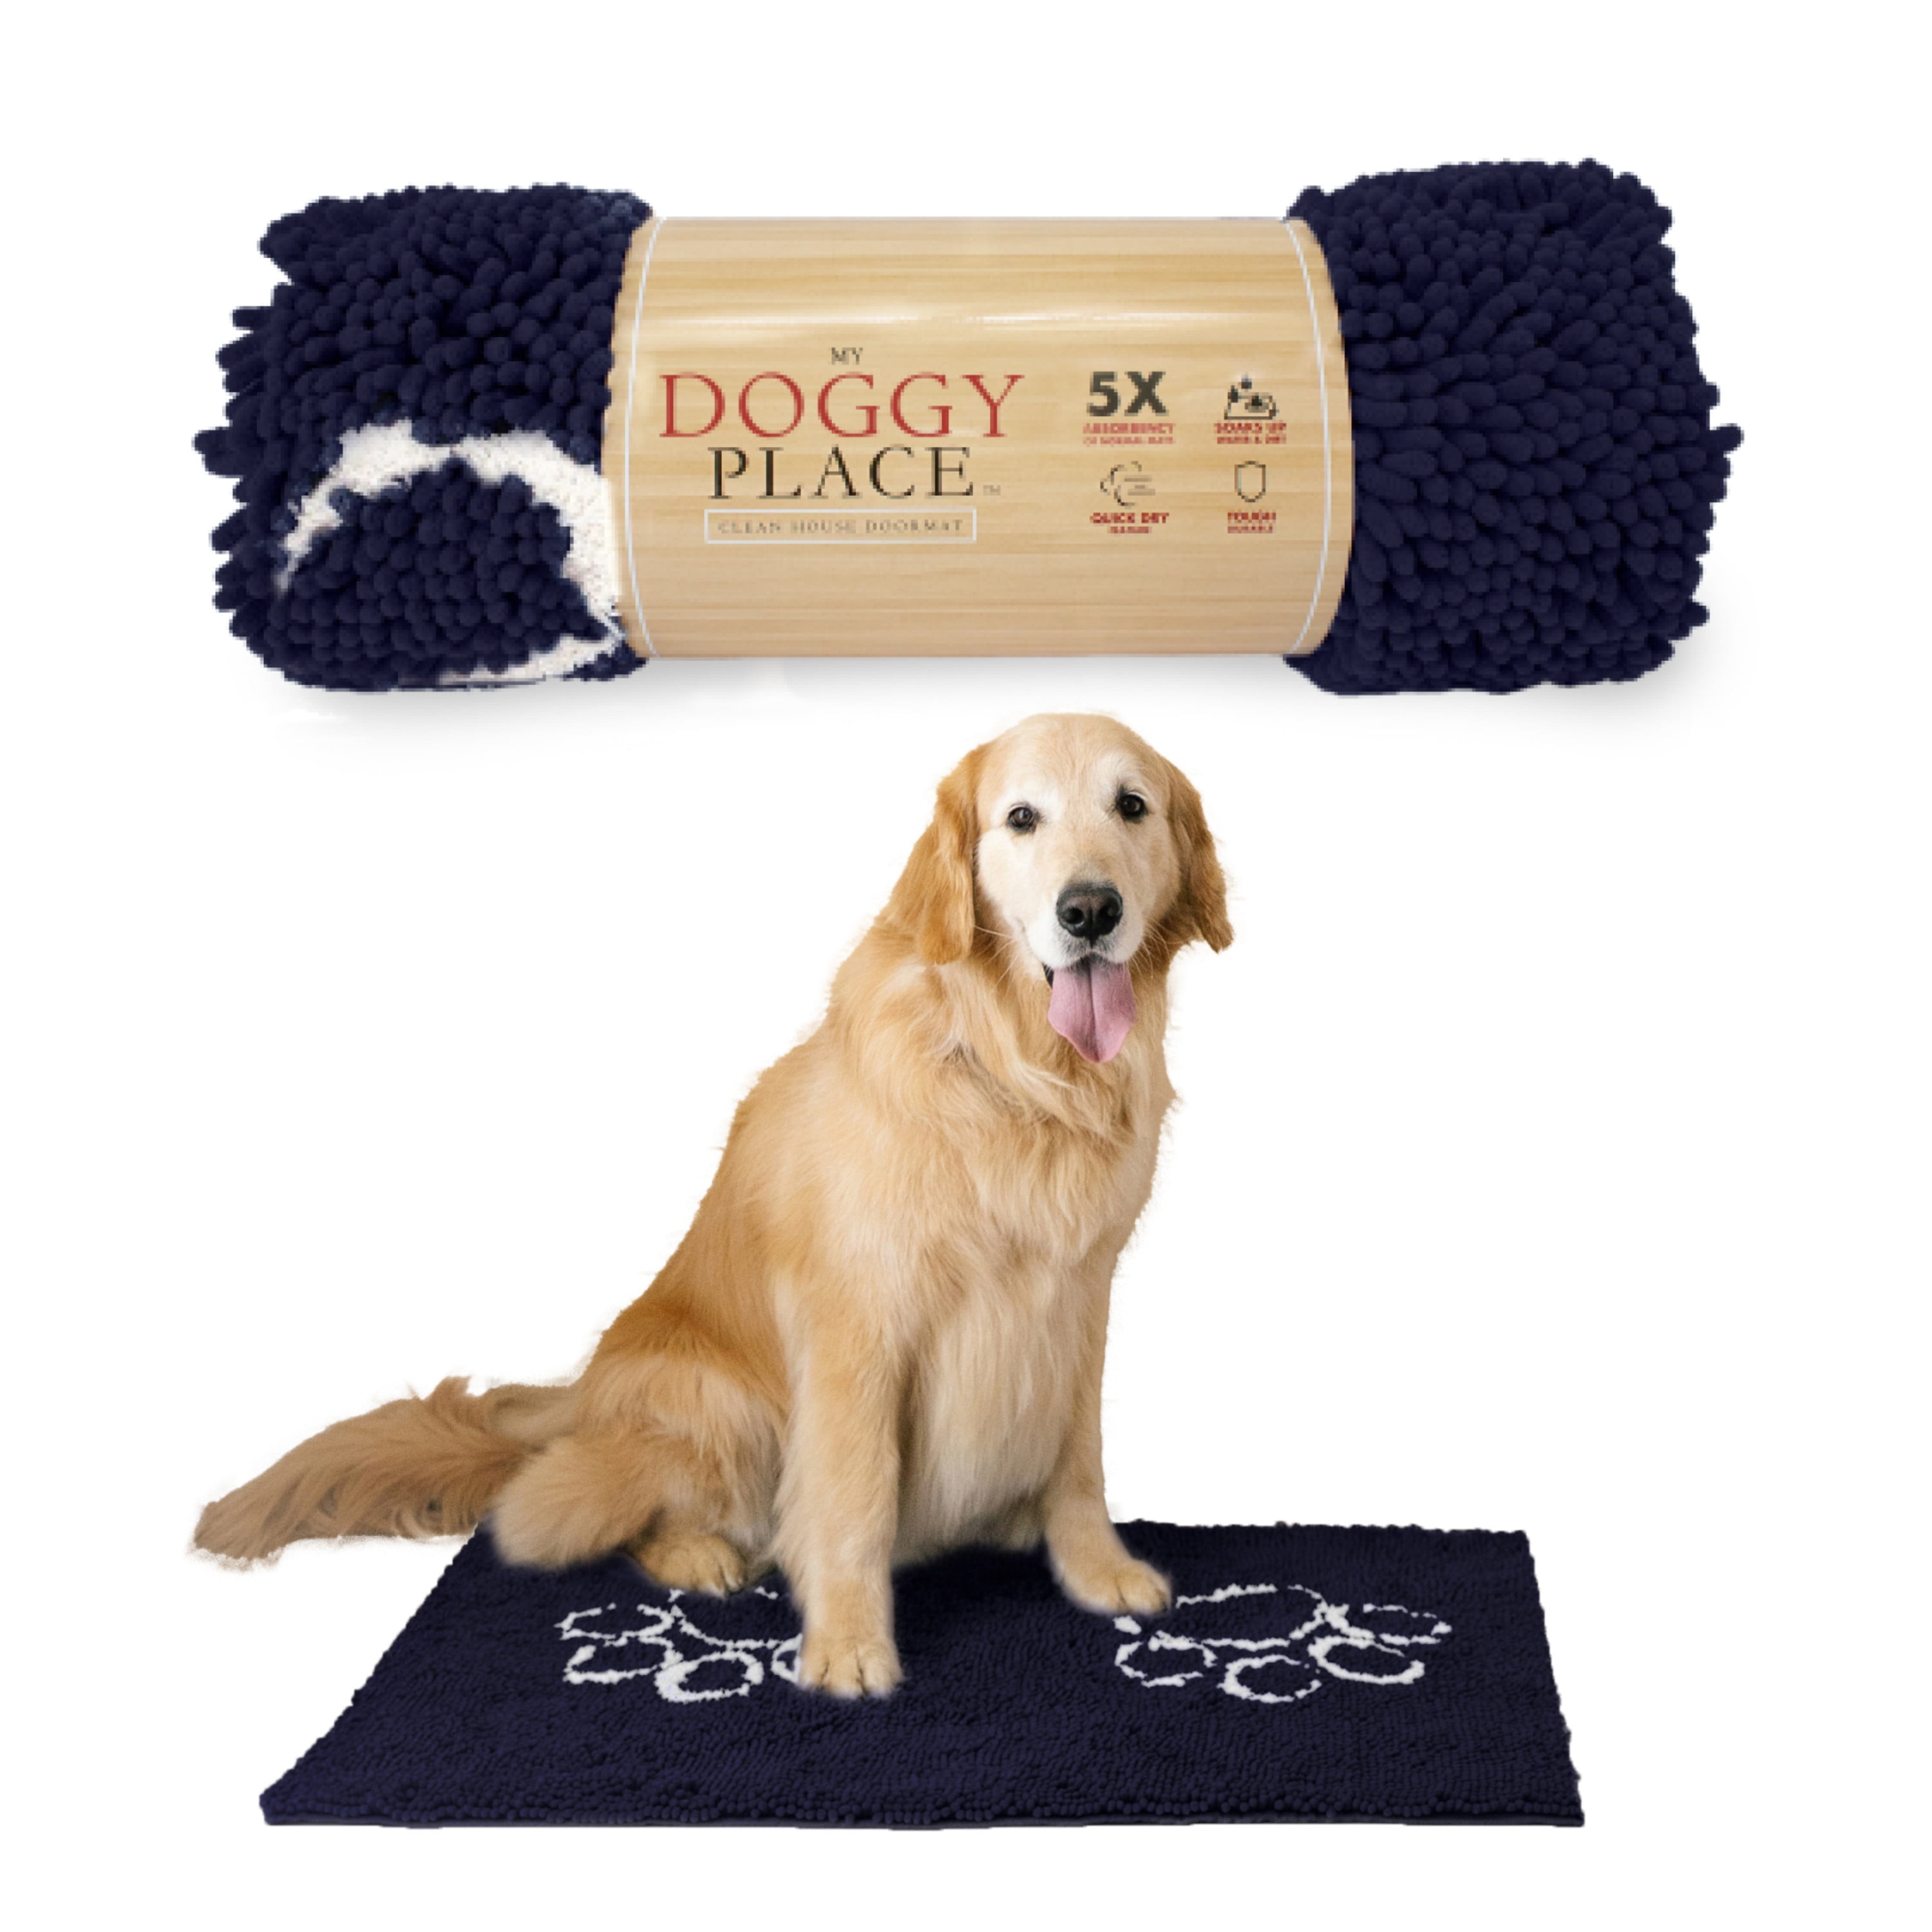 DogBuddy dogbuddy dog door mat, ultra absorbent dog mat